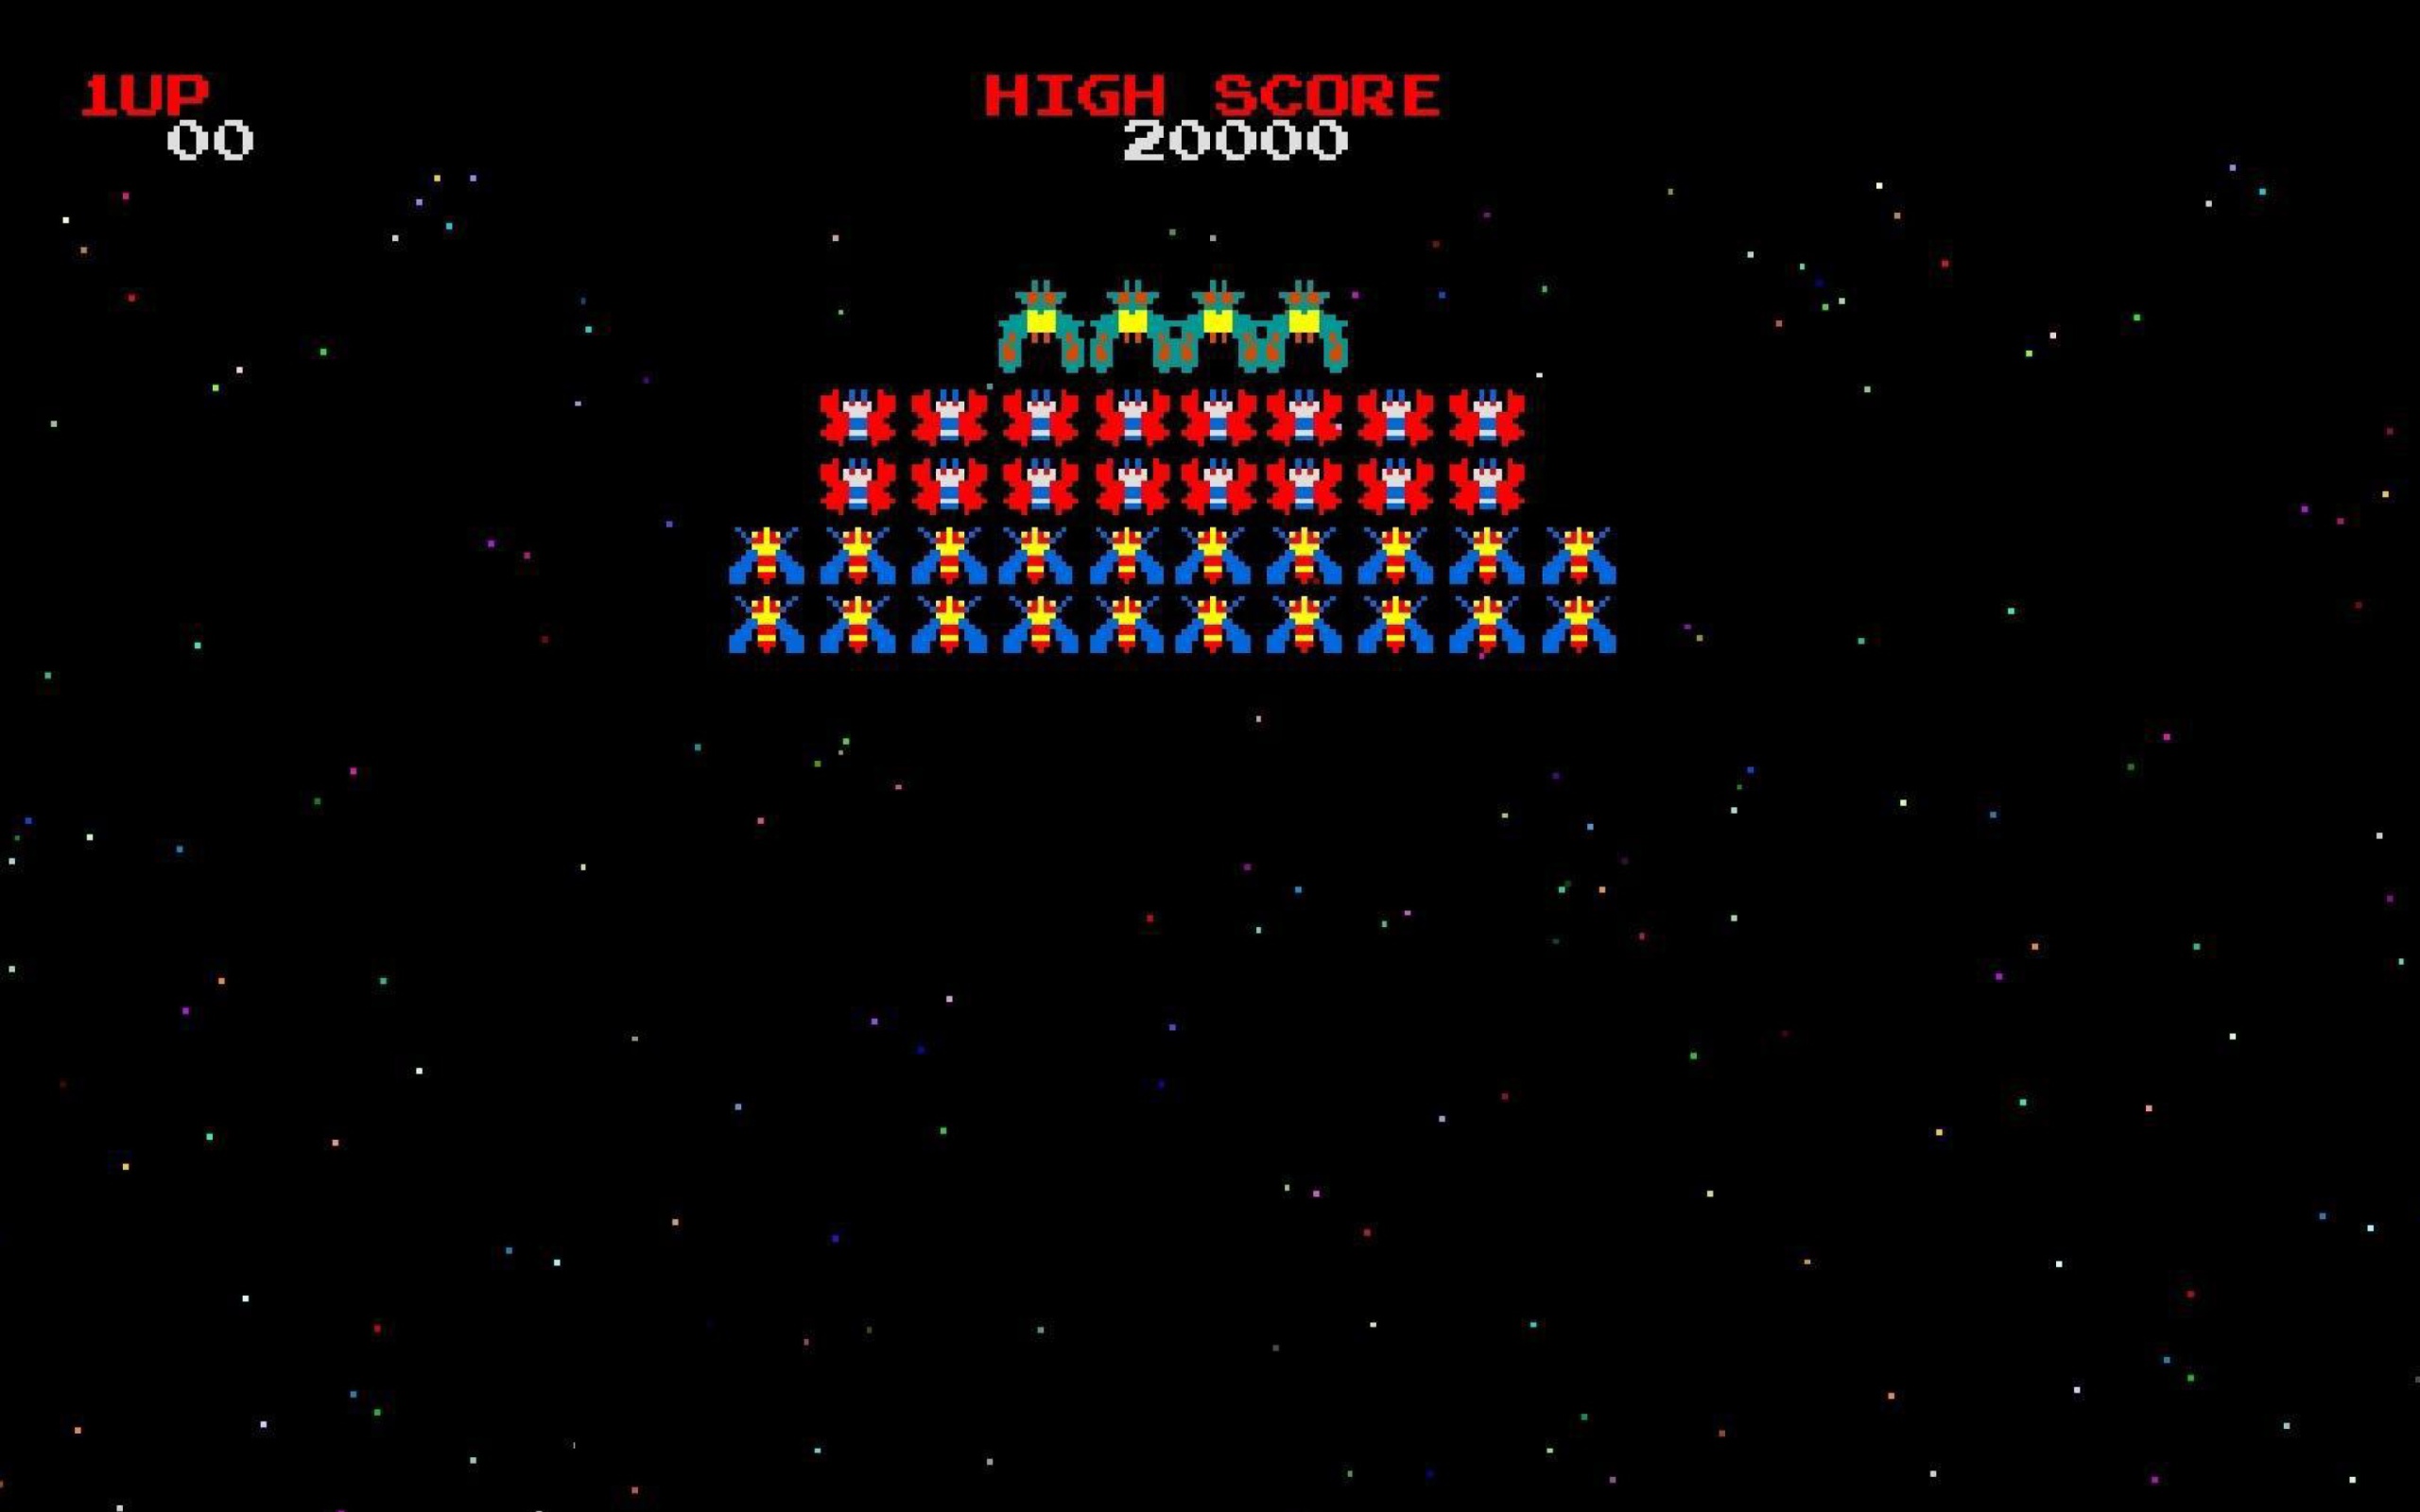 Galaxian Galaga Nintendo Arcade Game wallpaper 2560x1600